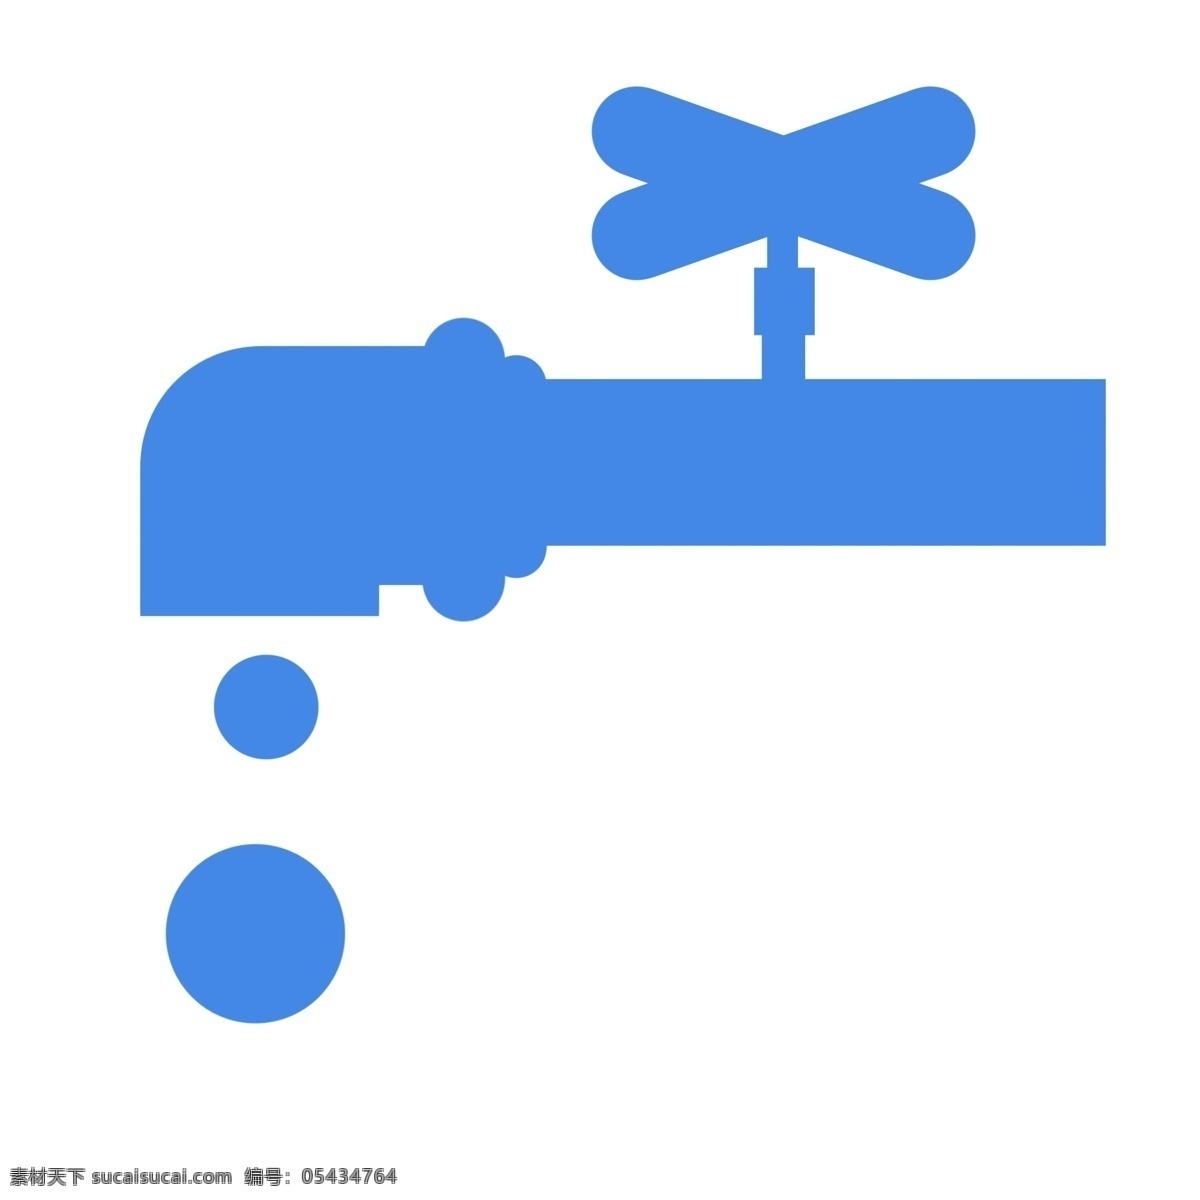 水龙头 滴水 能源 图标 矢量图 水滴 矢量 水 爱护环境 能源logo